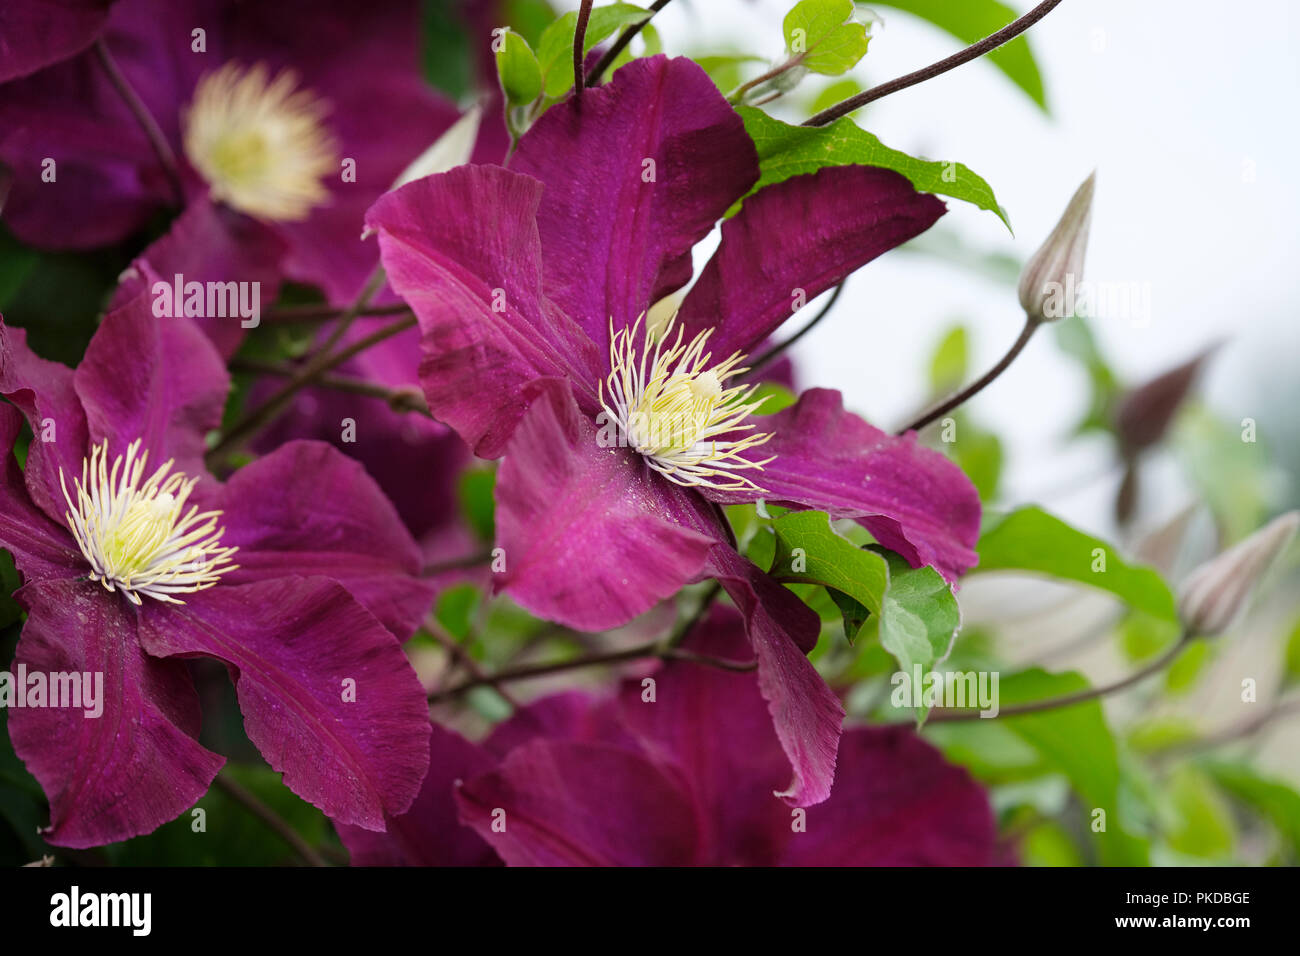 close-up of deep purple flowers of Clematis 'Warszawska Nike', clematis Warsaw Nike Stock Photo